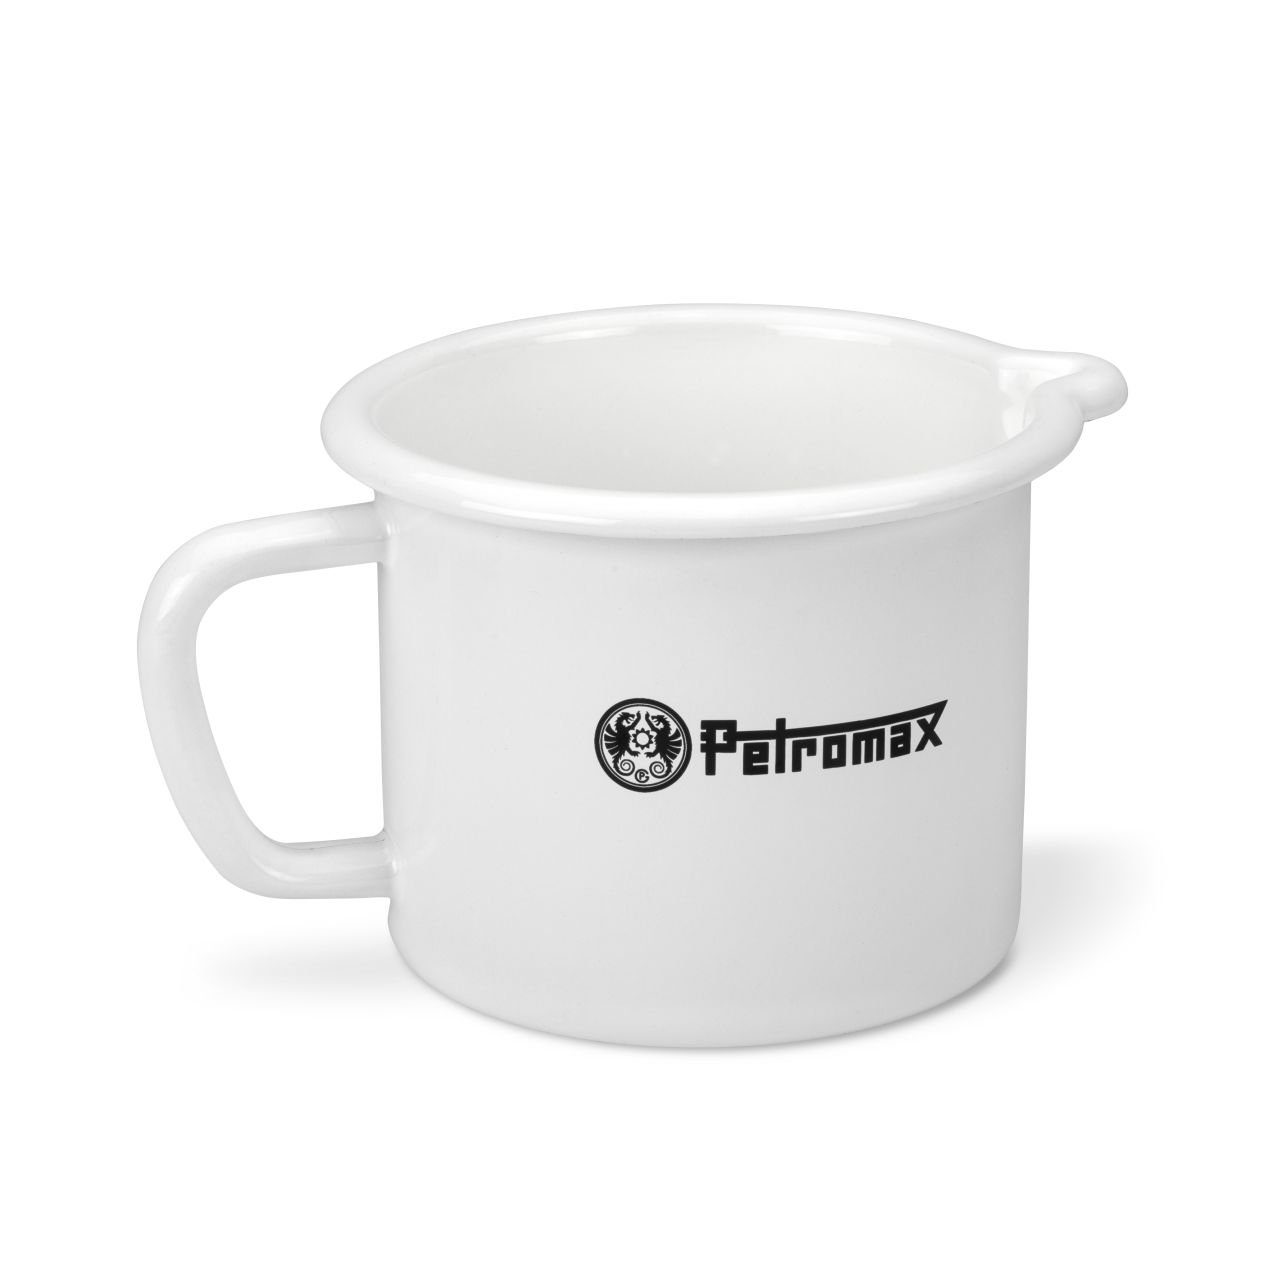 Petromax leicht weiß Messbecher, reinigende zu Kratzfeste Küchen-Zubehör, Liter) und Milchtopf, Messbecher Emaille (1,0 Oberfläche